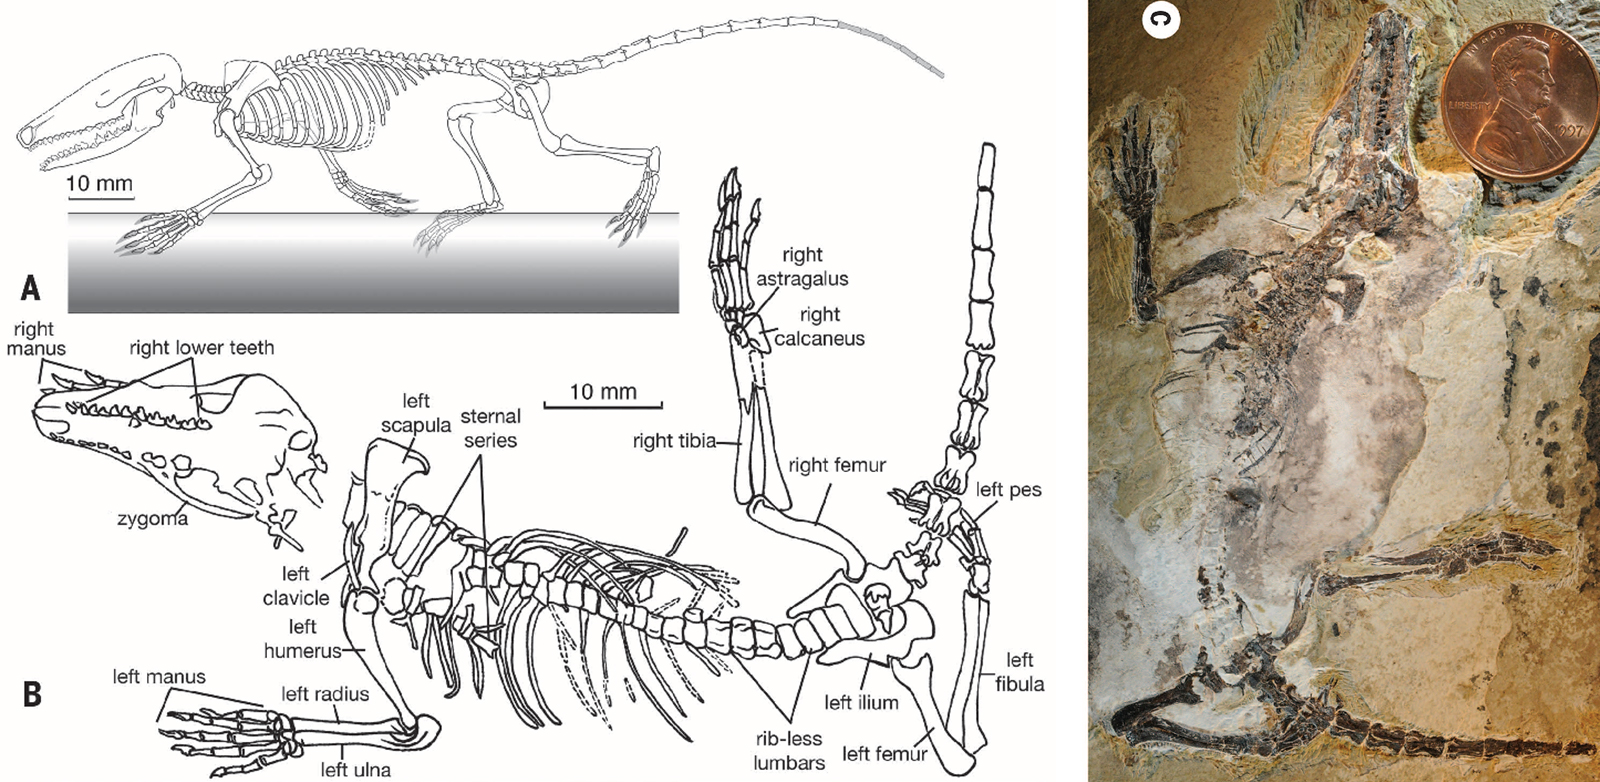 Scientific fossil diagram showing where major bones are located in a fossil specimen.